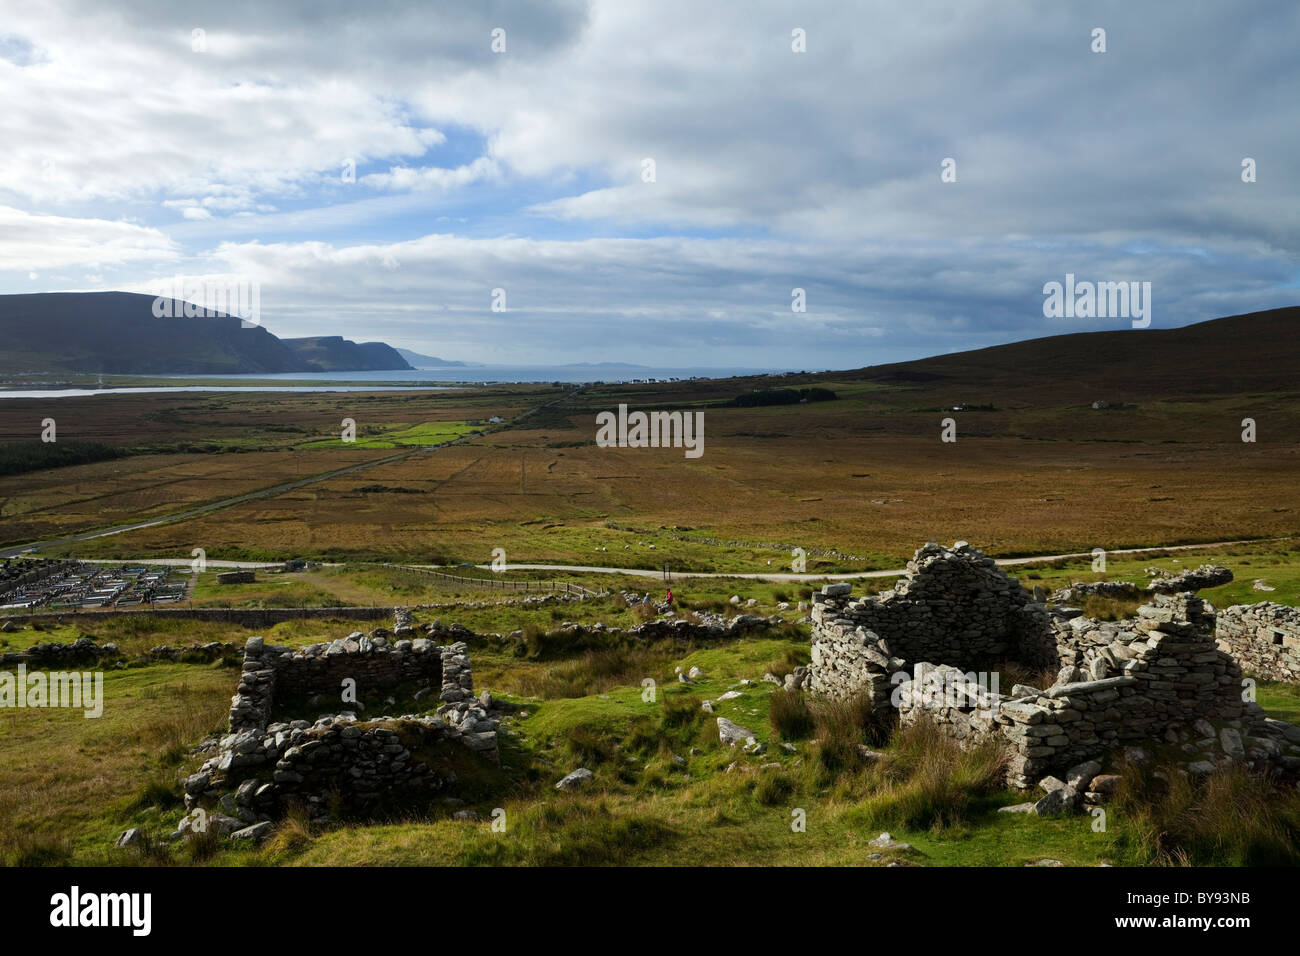 Der Missionar Siedlung- oder Deserted Village, an den Hängen des Slievemore, Achill Island, County Mayo, Irland Stockfoto